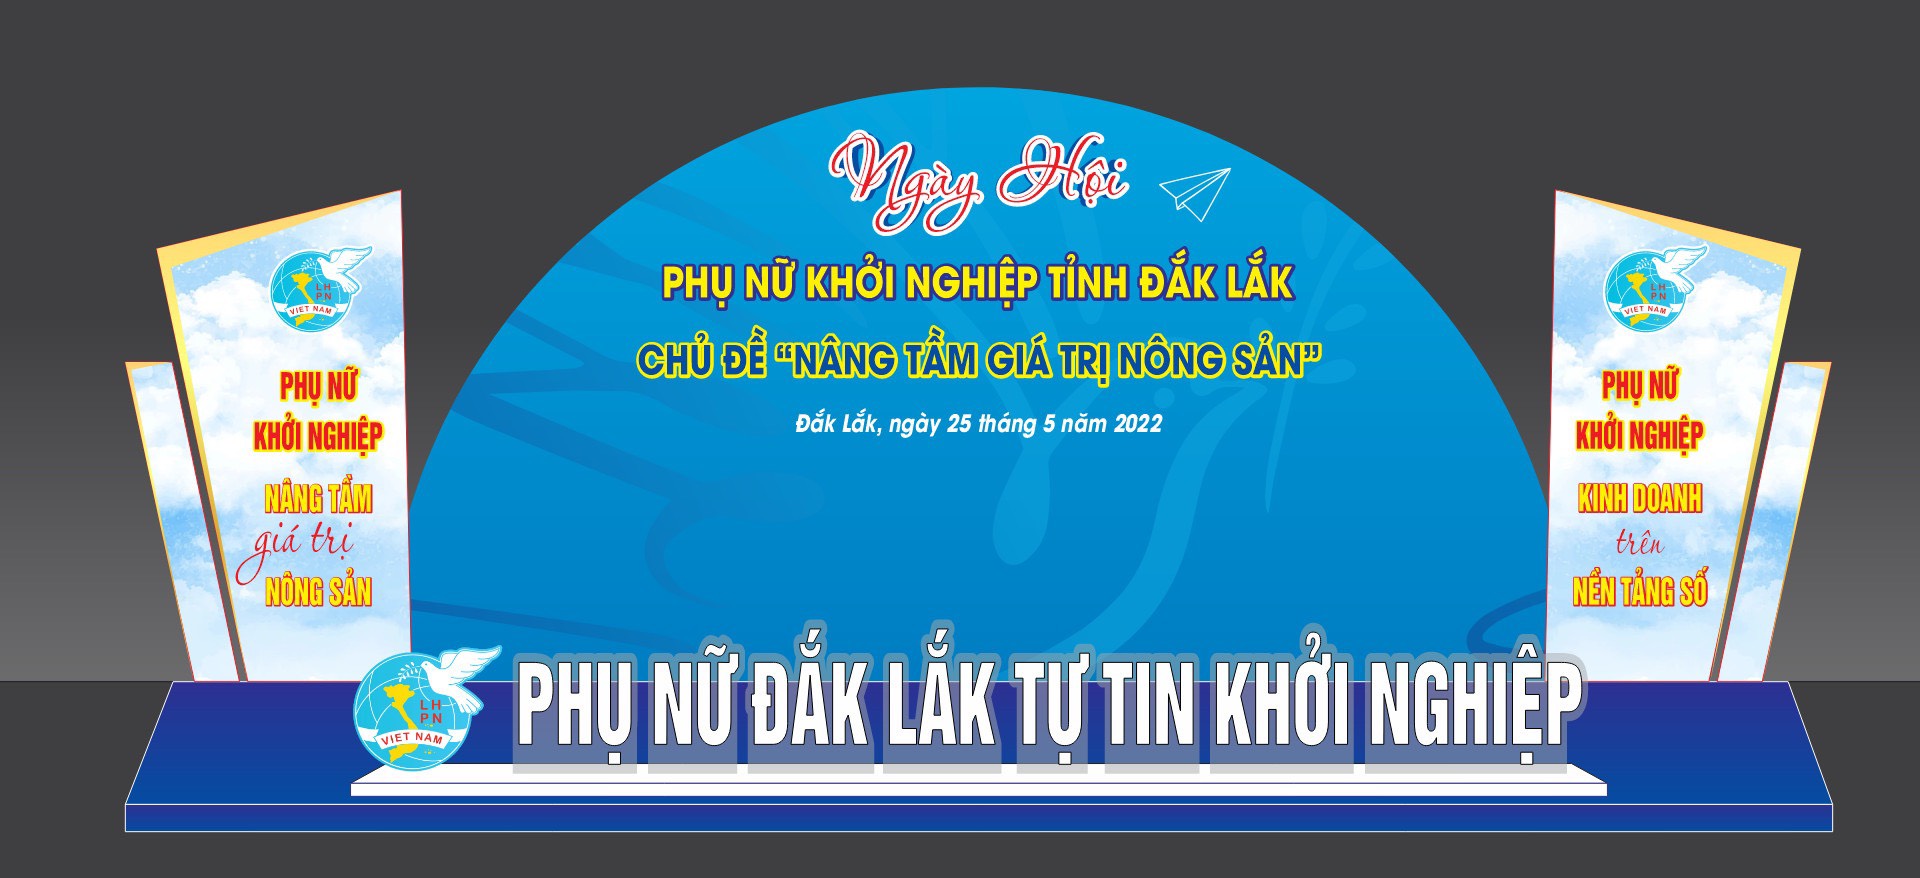 Các hoạt động nổi bật của “Ngày hội Phụ nữ khởi nghiệp” tỉnh Đắk Lắk năm 2022